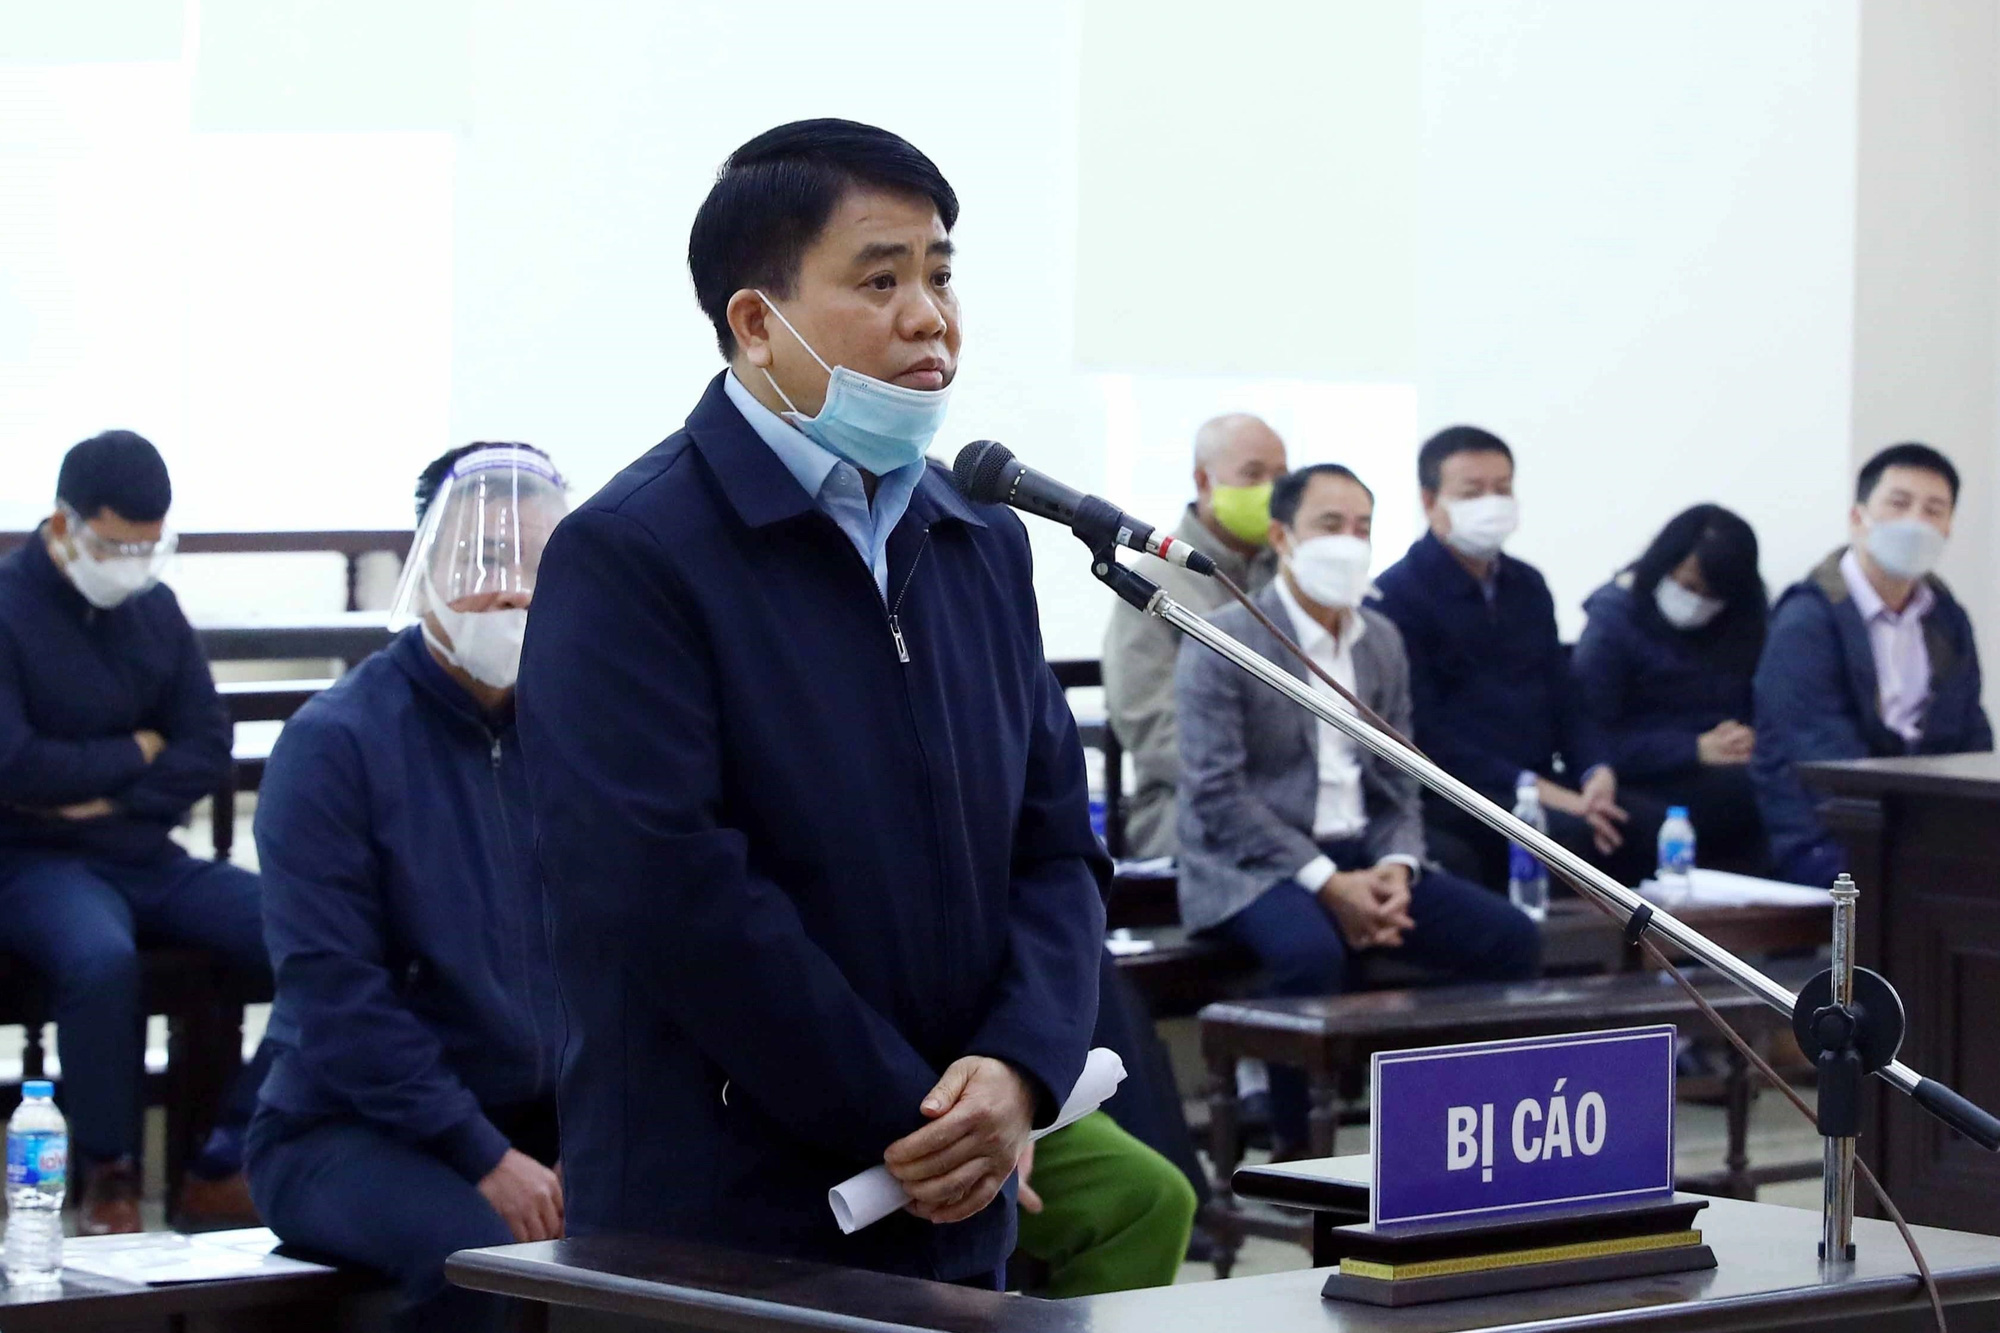 Bất ngờ nộp 10 tỷ đồng, ông Nguyễn Đức Chung được đề nghị giảm án - Ảnh 1.